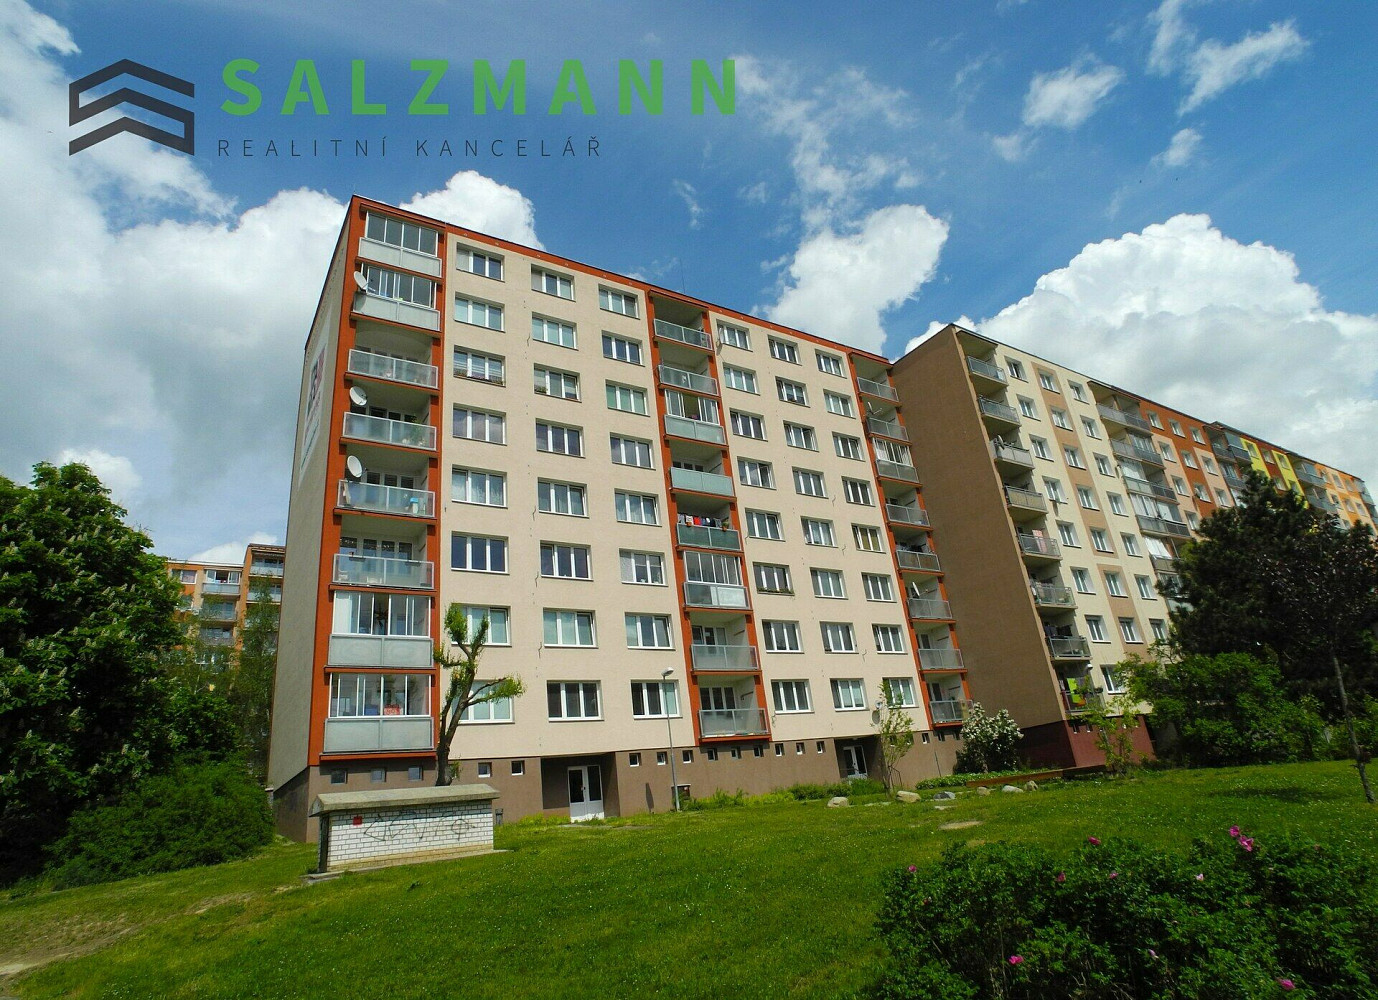 Komenského, Plzeň - Bolevec